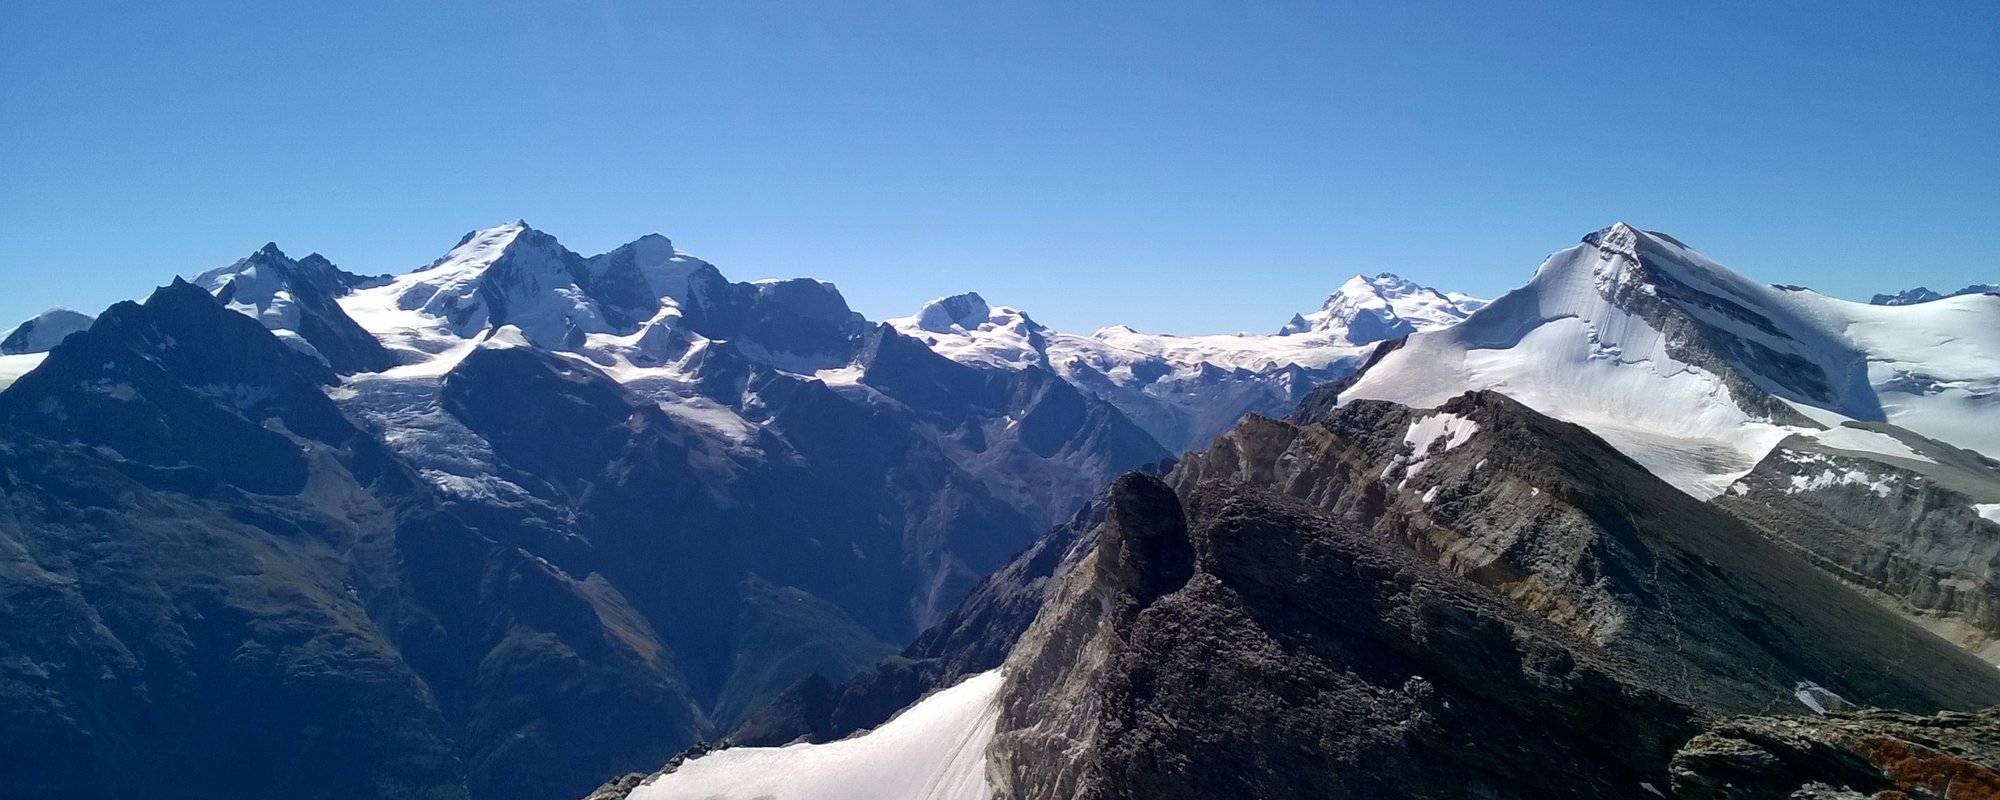 Trekking From Chamonix To Zermatt - Walkers Haute Route - Bonus Day